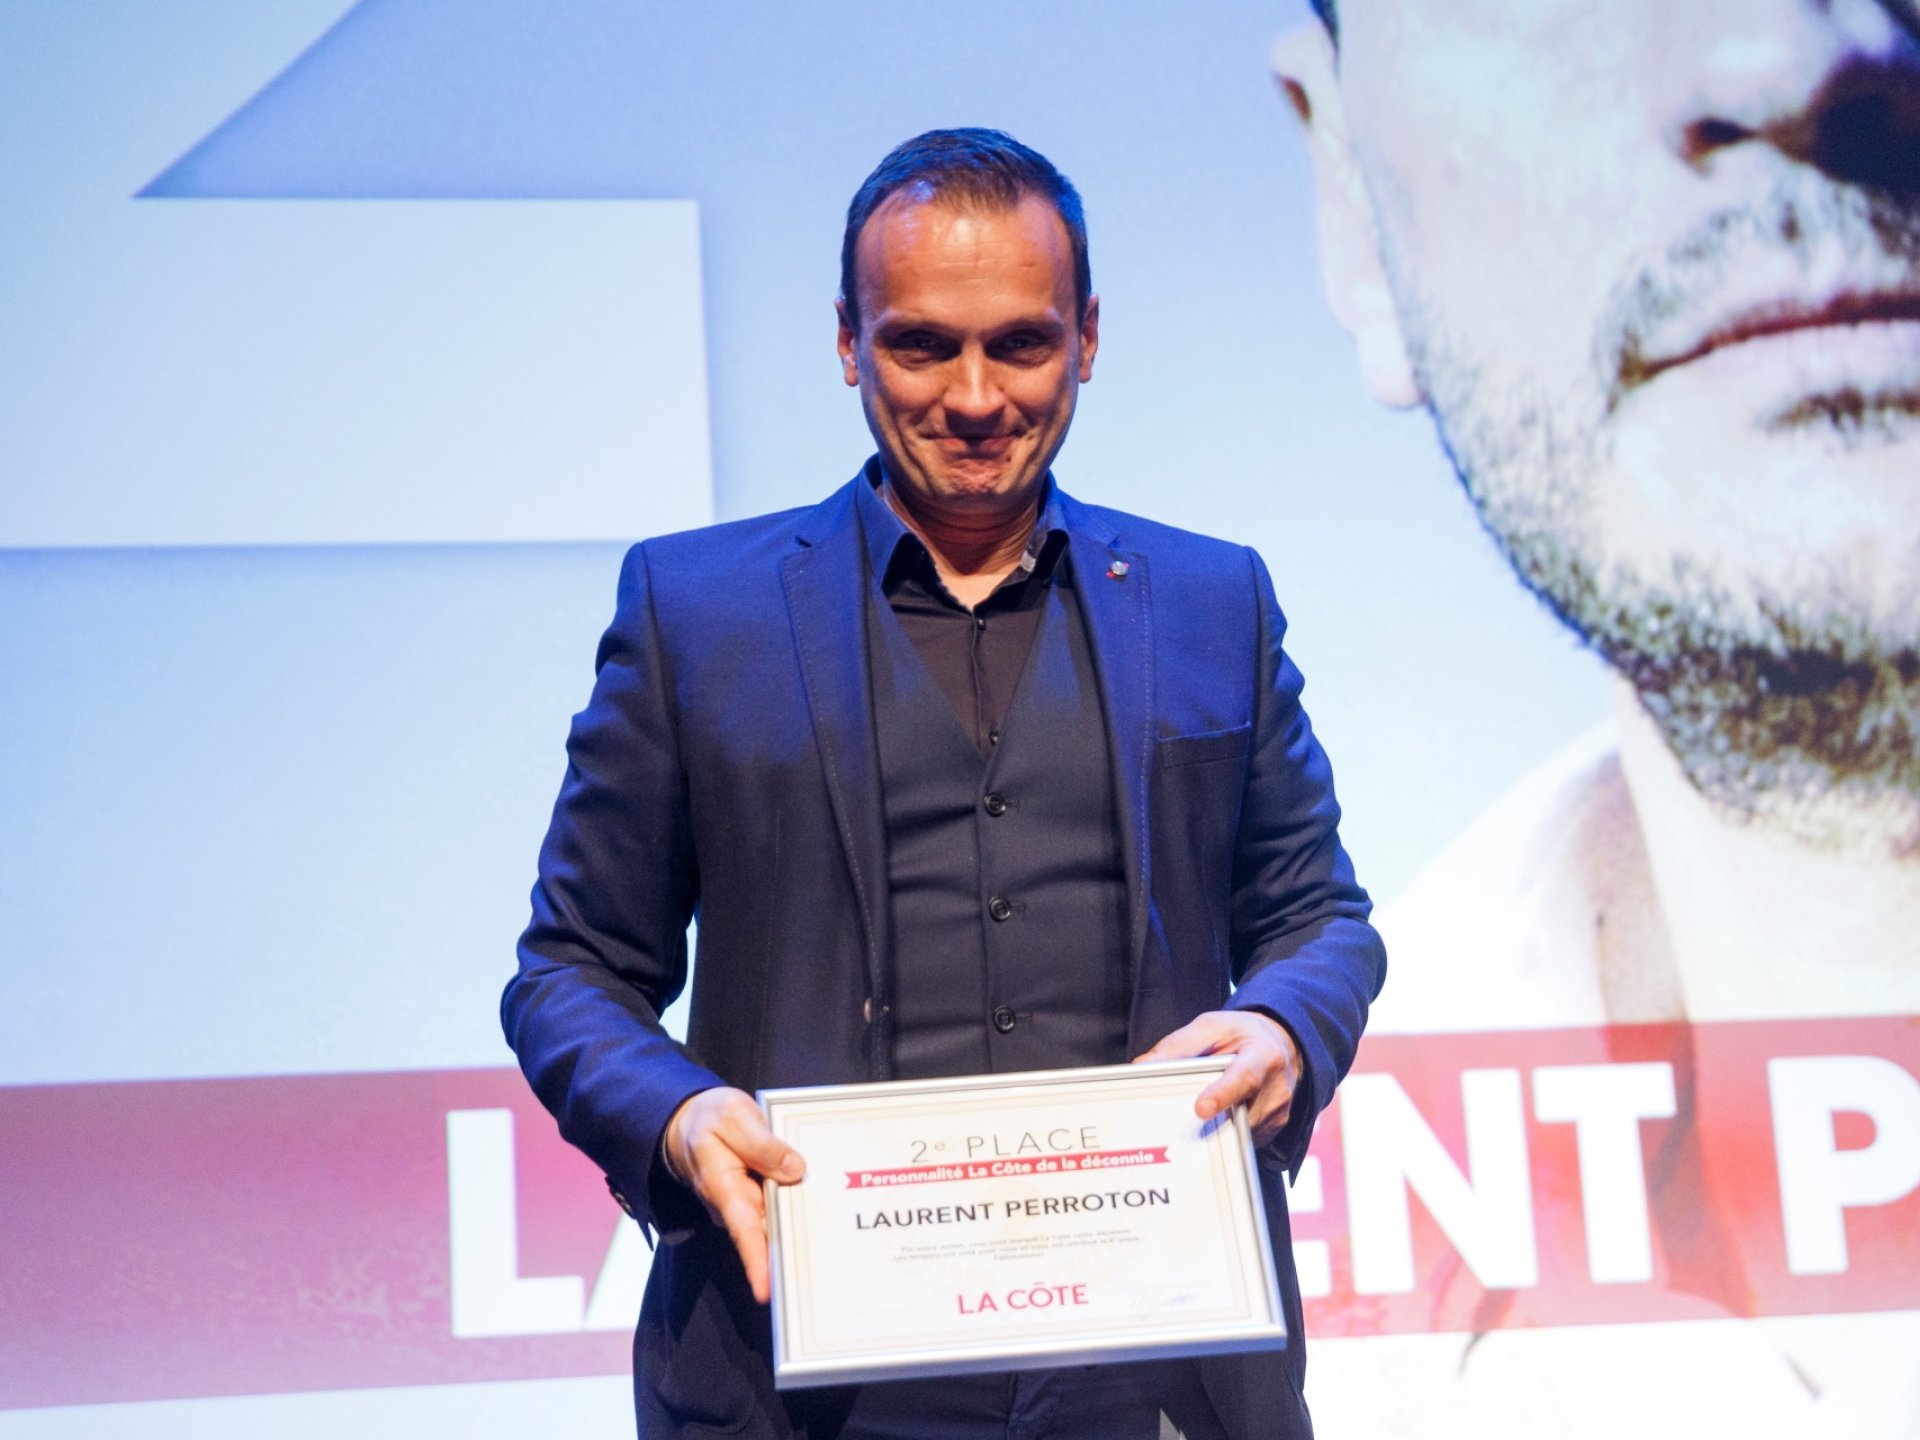 Deuxième, Laurent Perroton qui a remporté le titre de Personnalité La Côte 2015 pour ses exploits à la tête du Forward Morges HC.